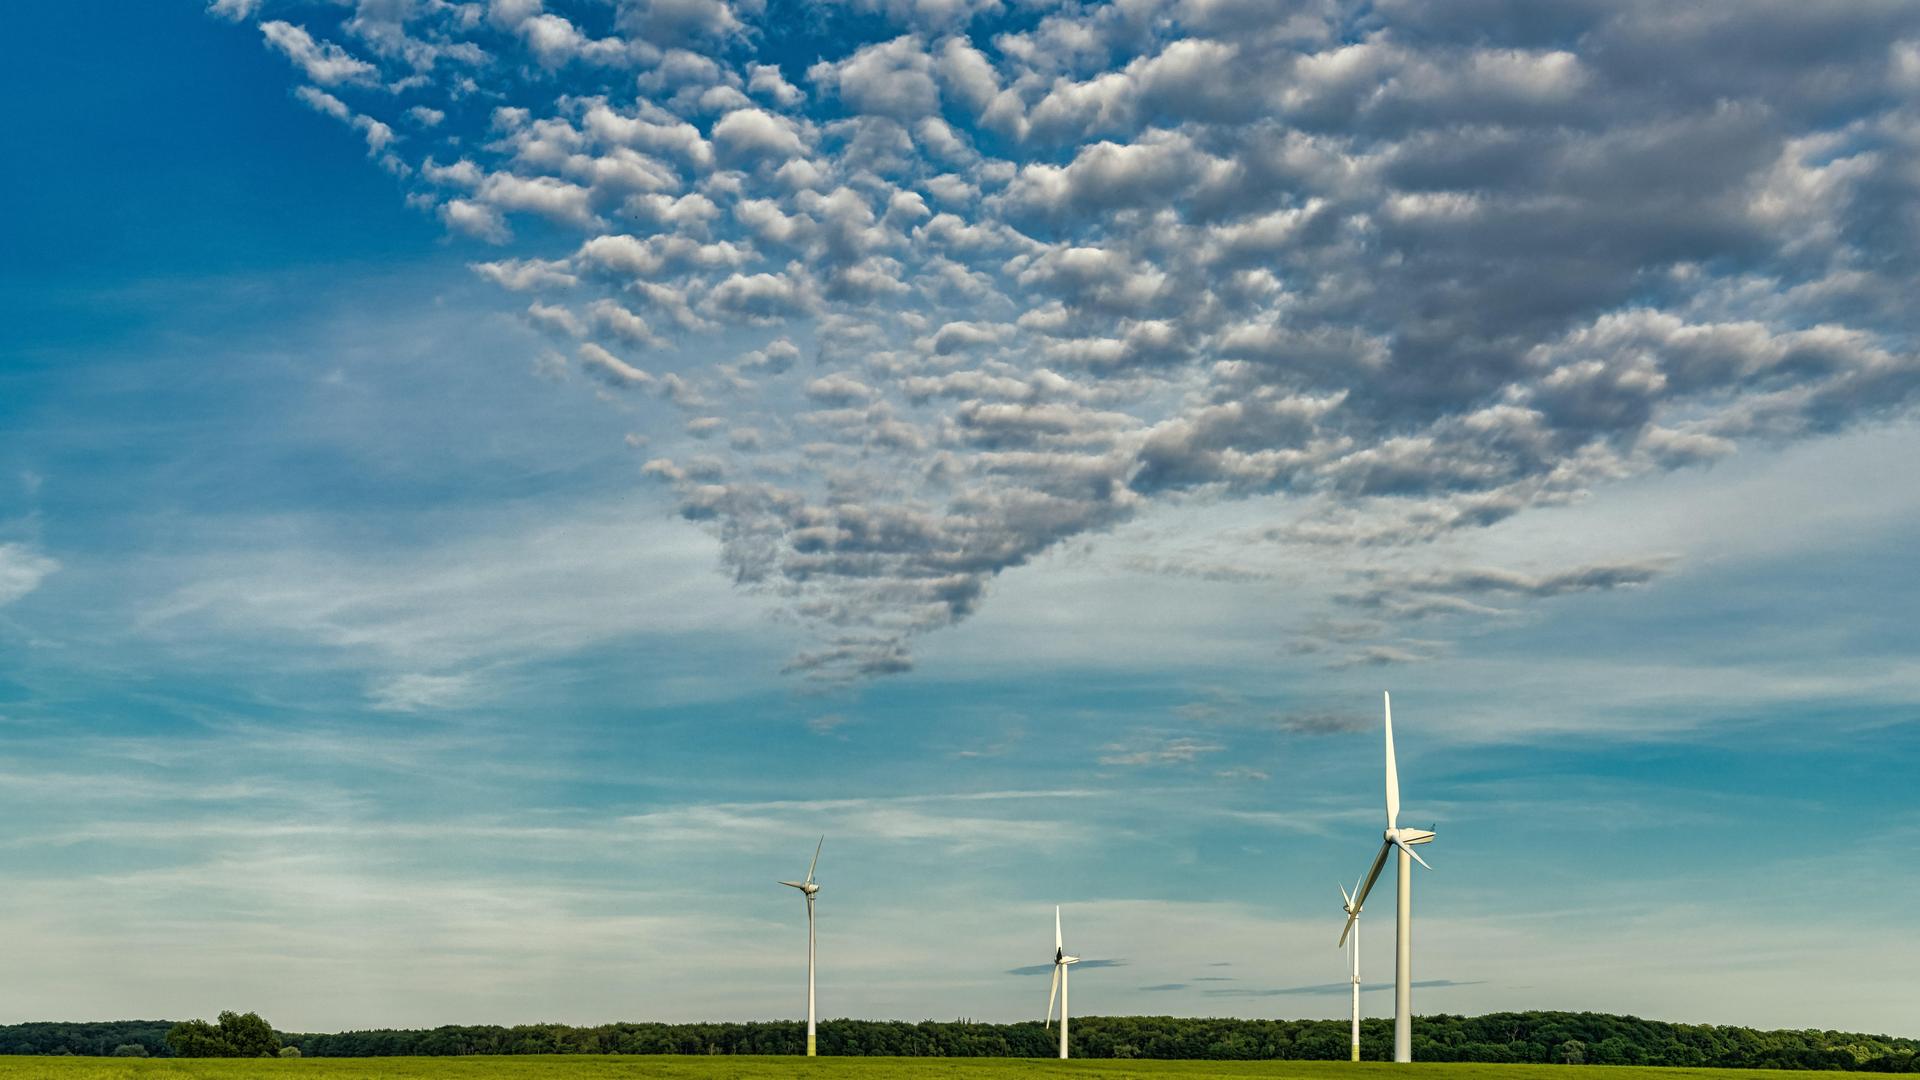 Auf einem Feld in Mecklenburg-Vorpommern stehen drei Windräder, darüber ist ein blauer Himmel mit Wolken.